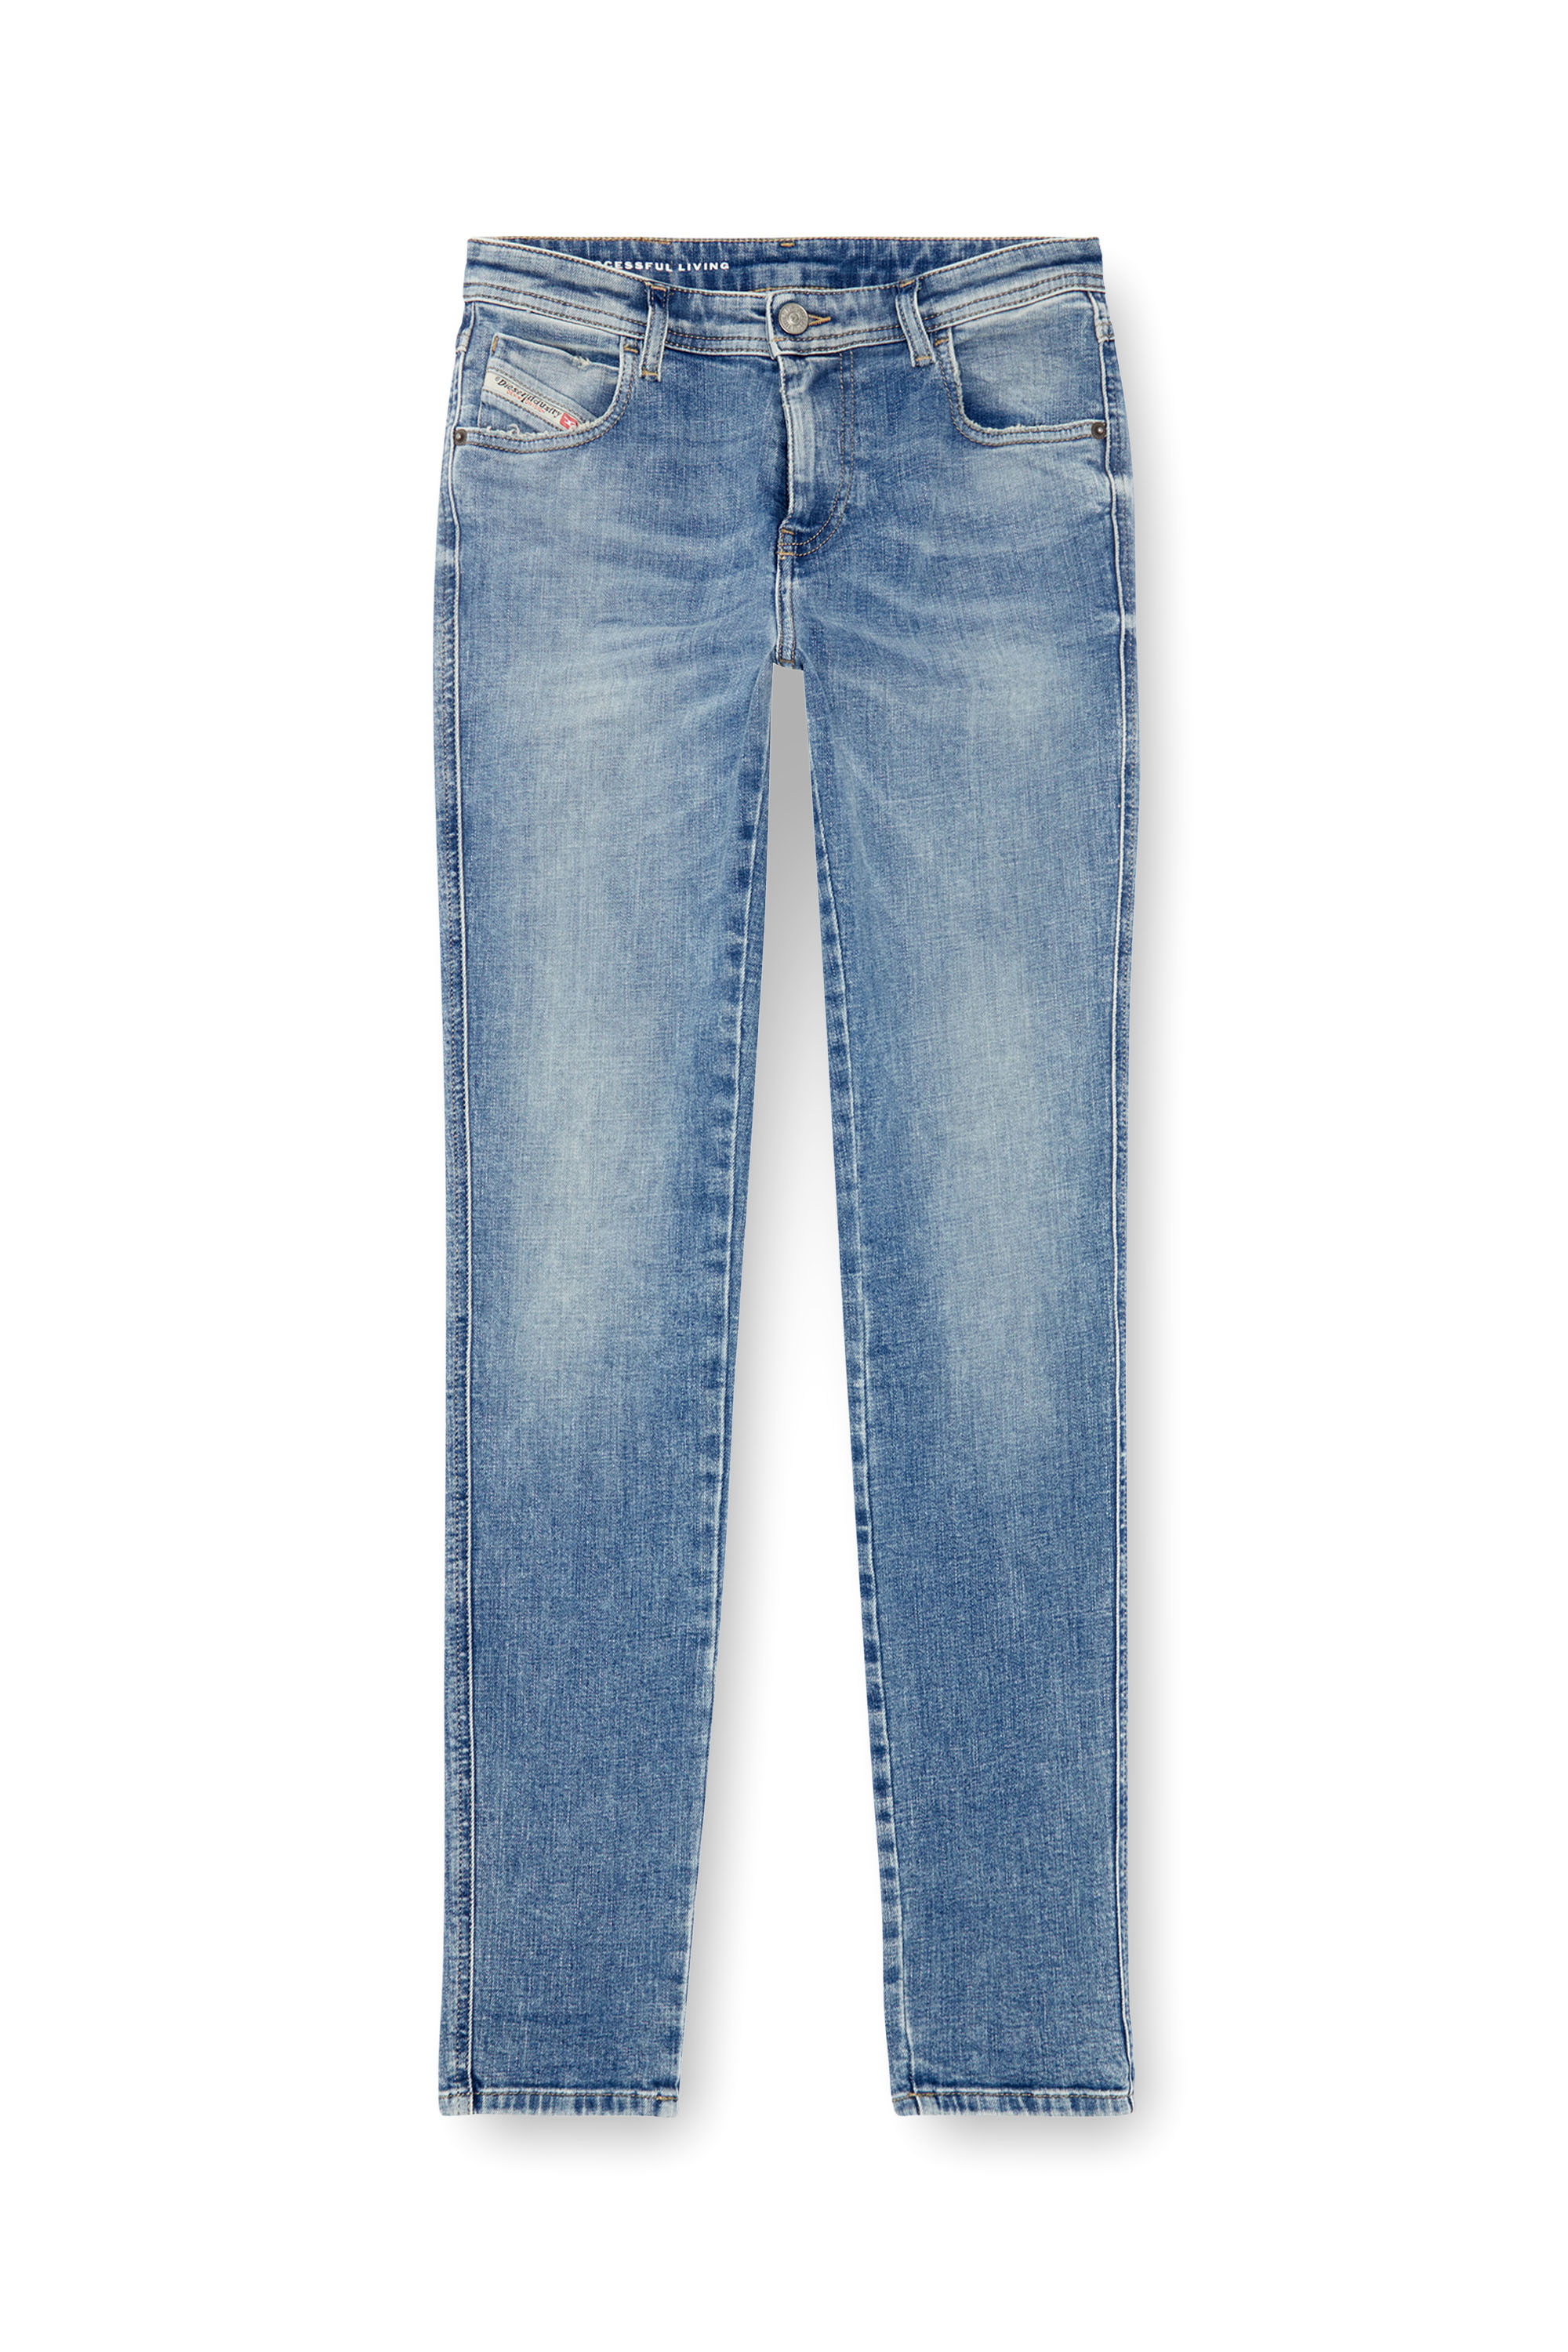 Diesel - Skinny Jeans 2015 Babhila 09J21, Mujer Skinny Jeans - 2015 Babhila in Azul marino - Image 5